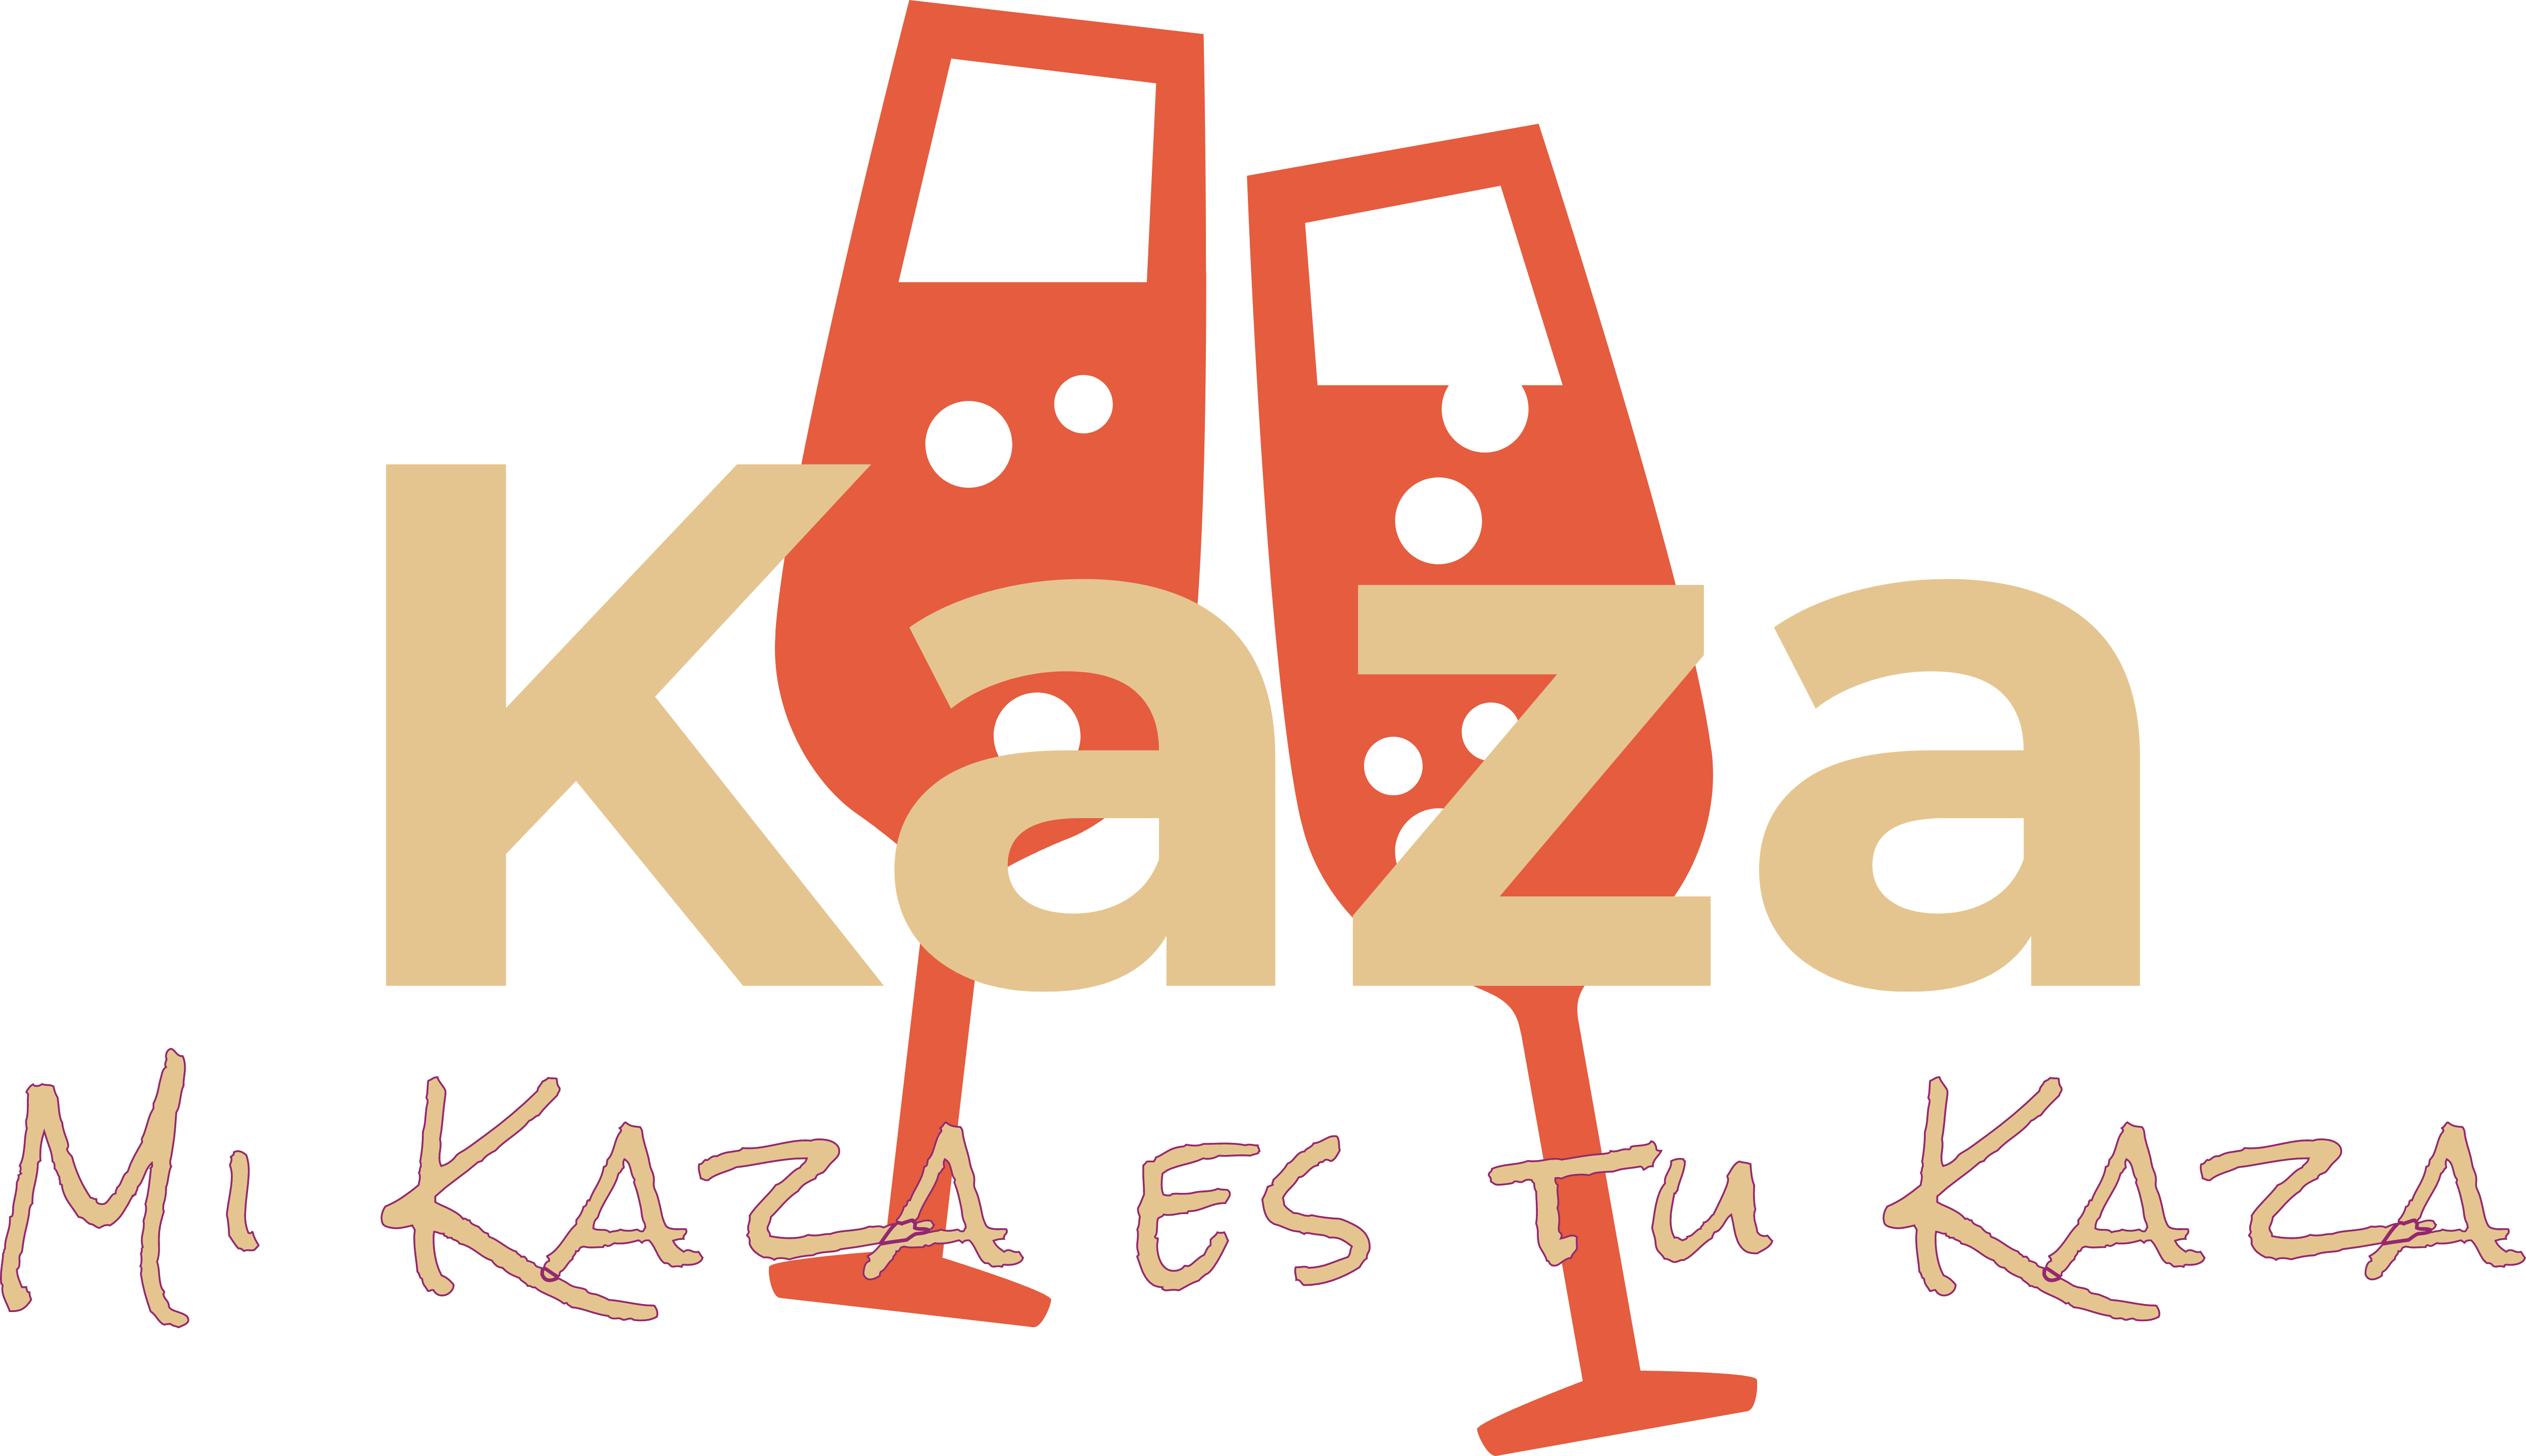 Kaza